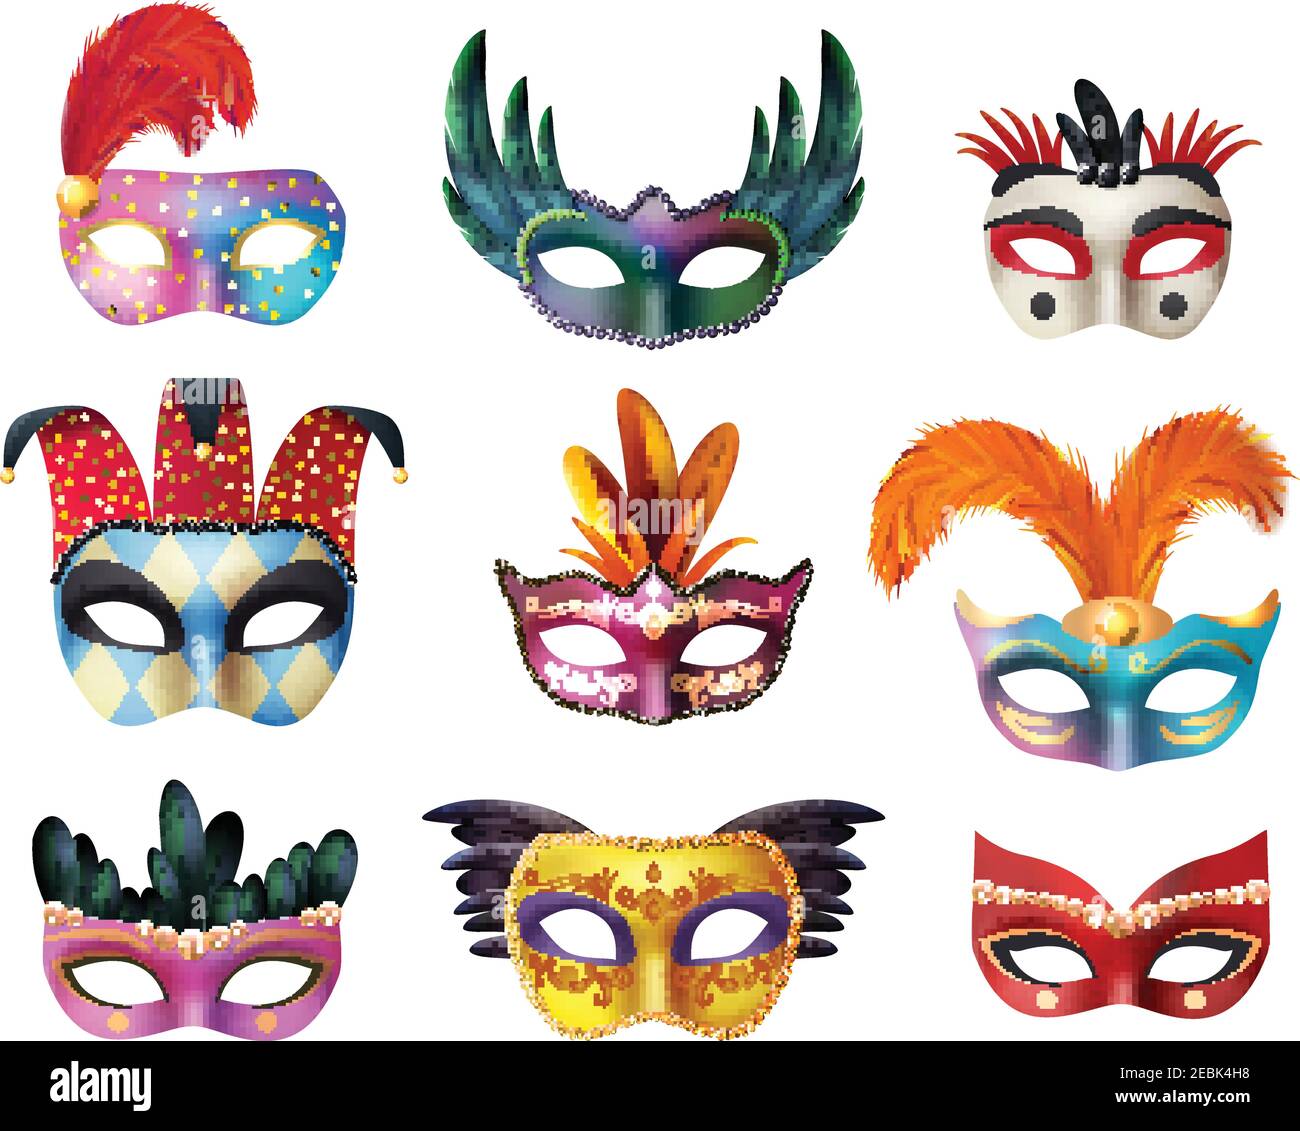 Autentica collezione di maschere facciali dipinte a mano veneziane per il carnevale per la festa decorazione o mascheramento realistico isolato illustrazione vettoriale Illustrazione Vettoriale